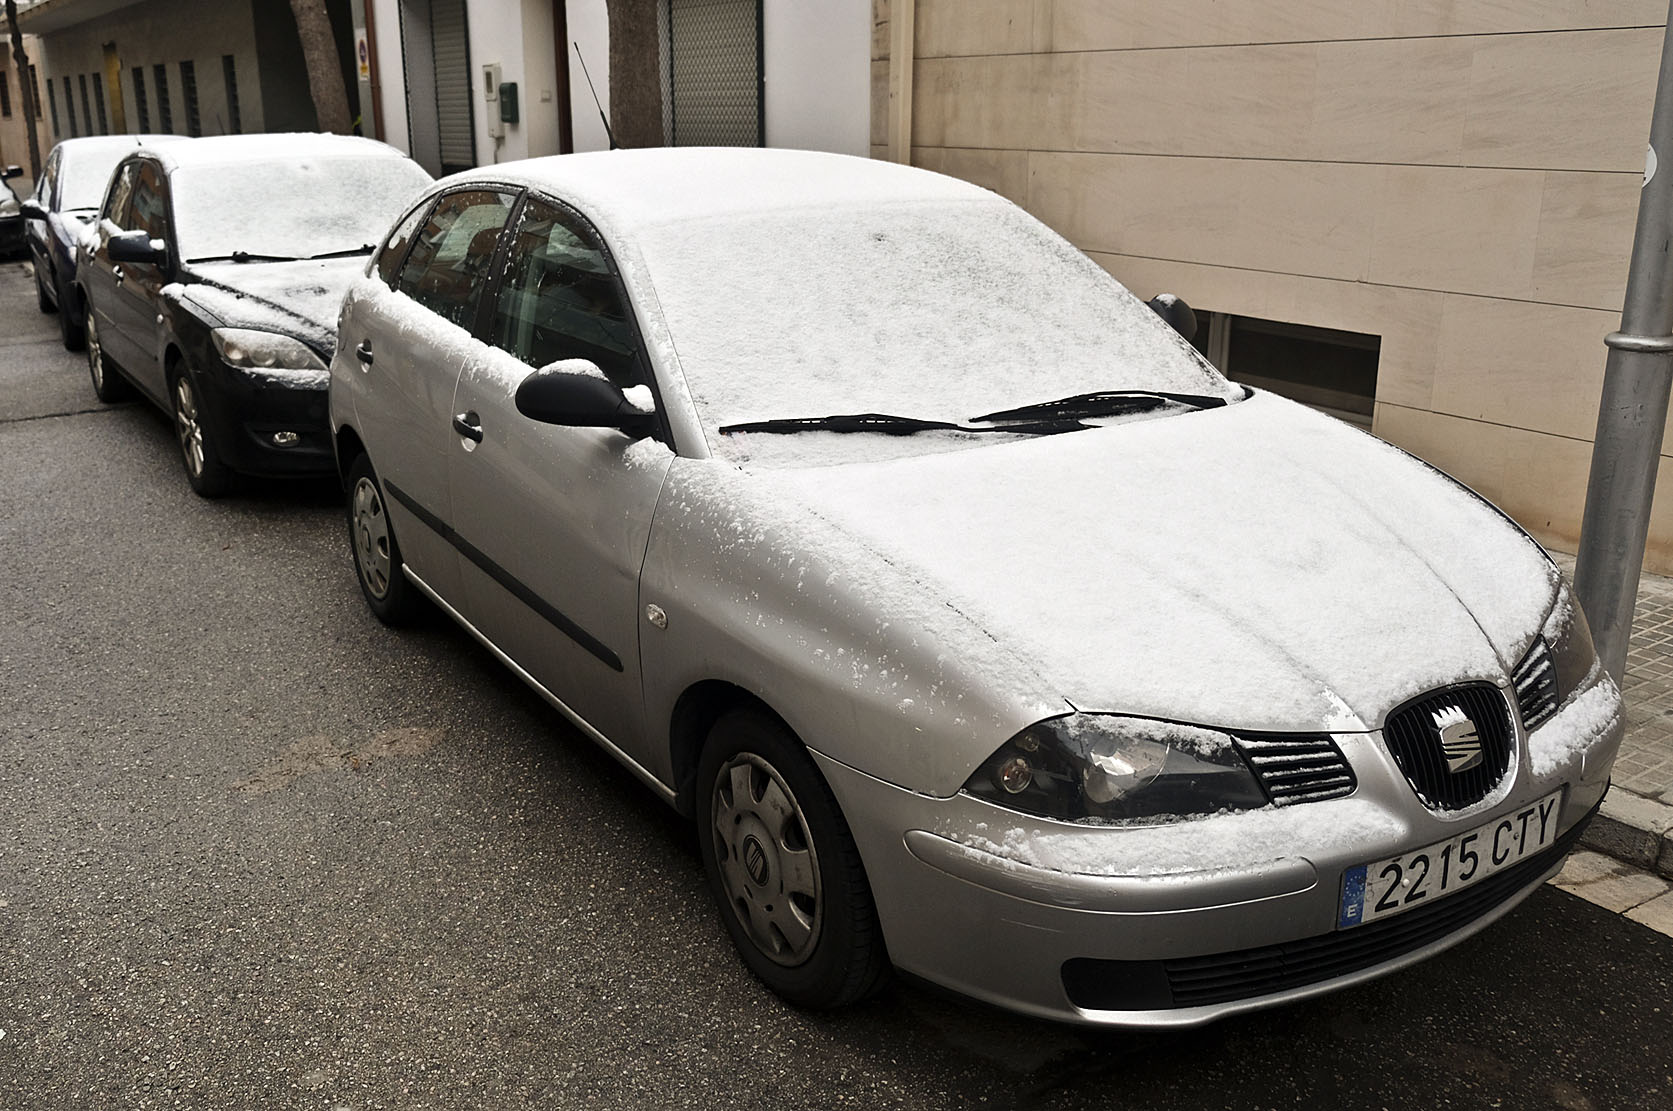 Cotxes coberts per una mica de neu aquest dimarts al matí a la Garriga